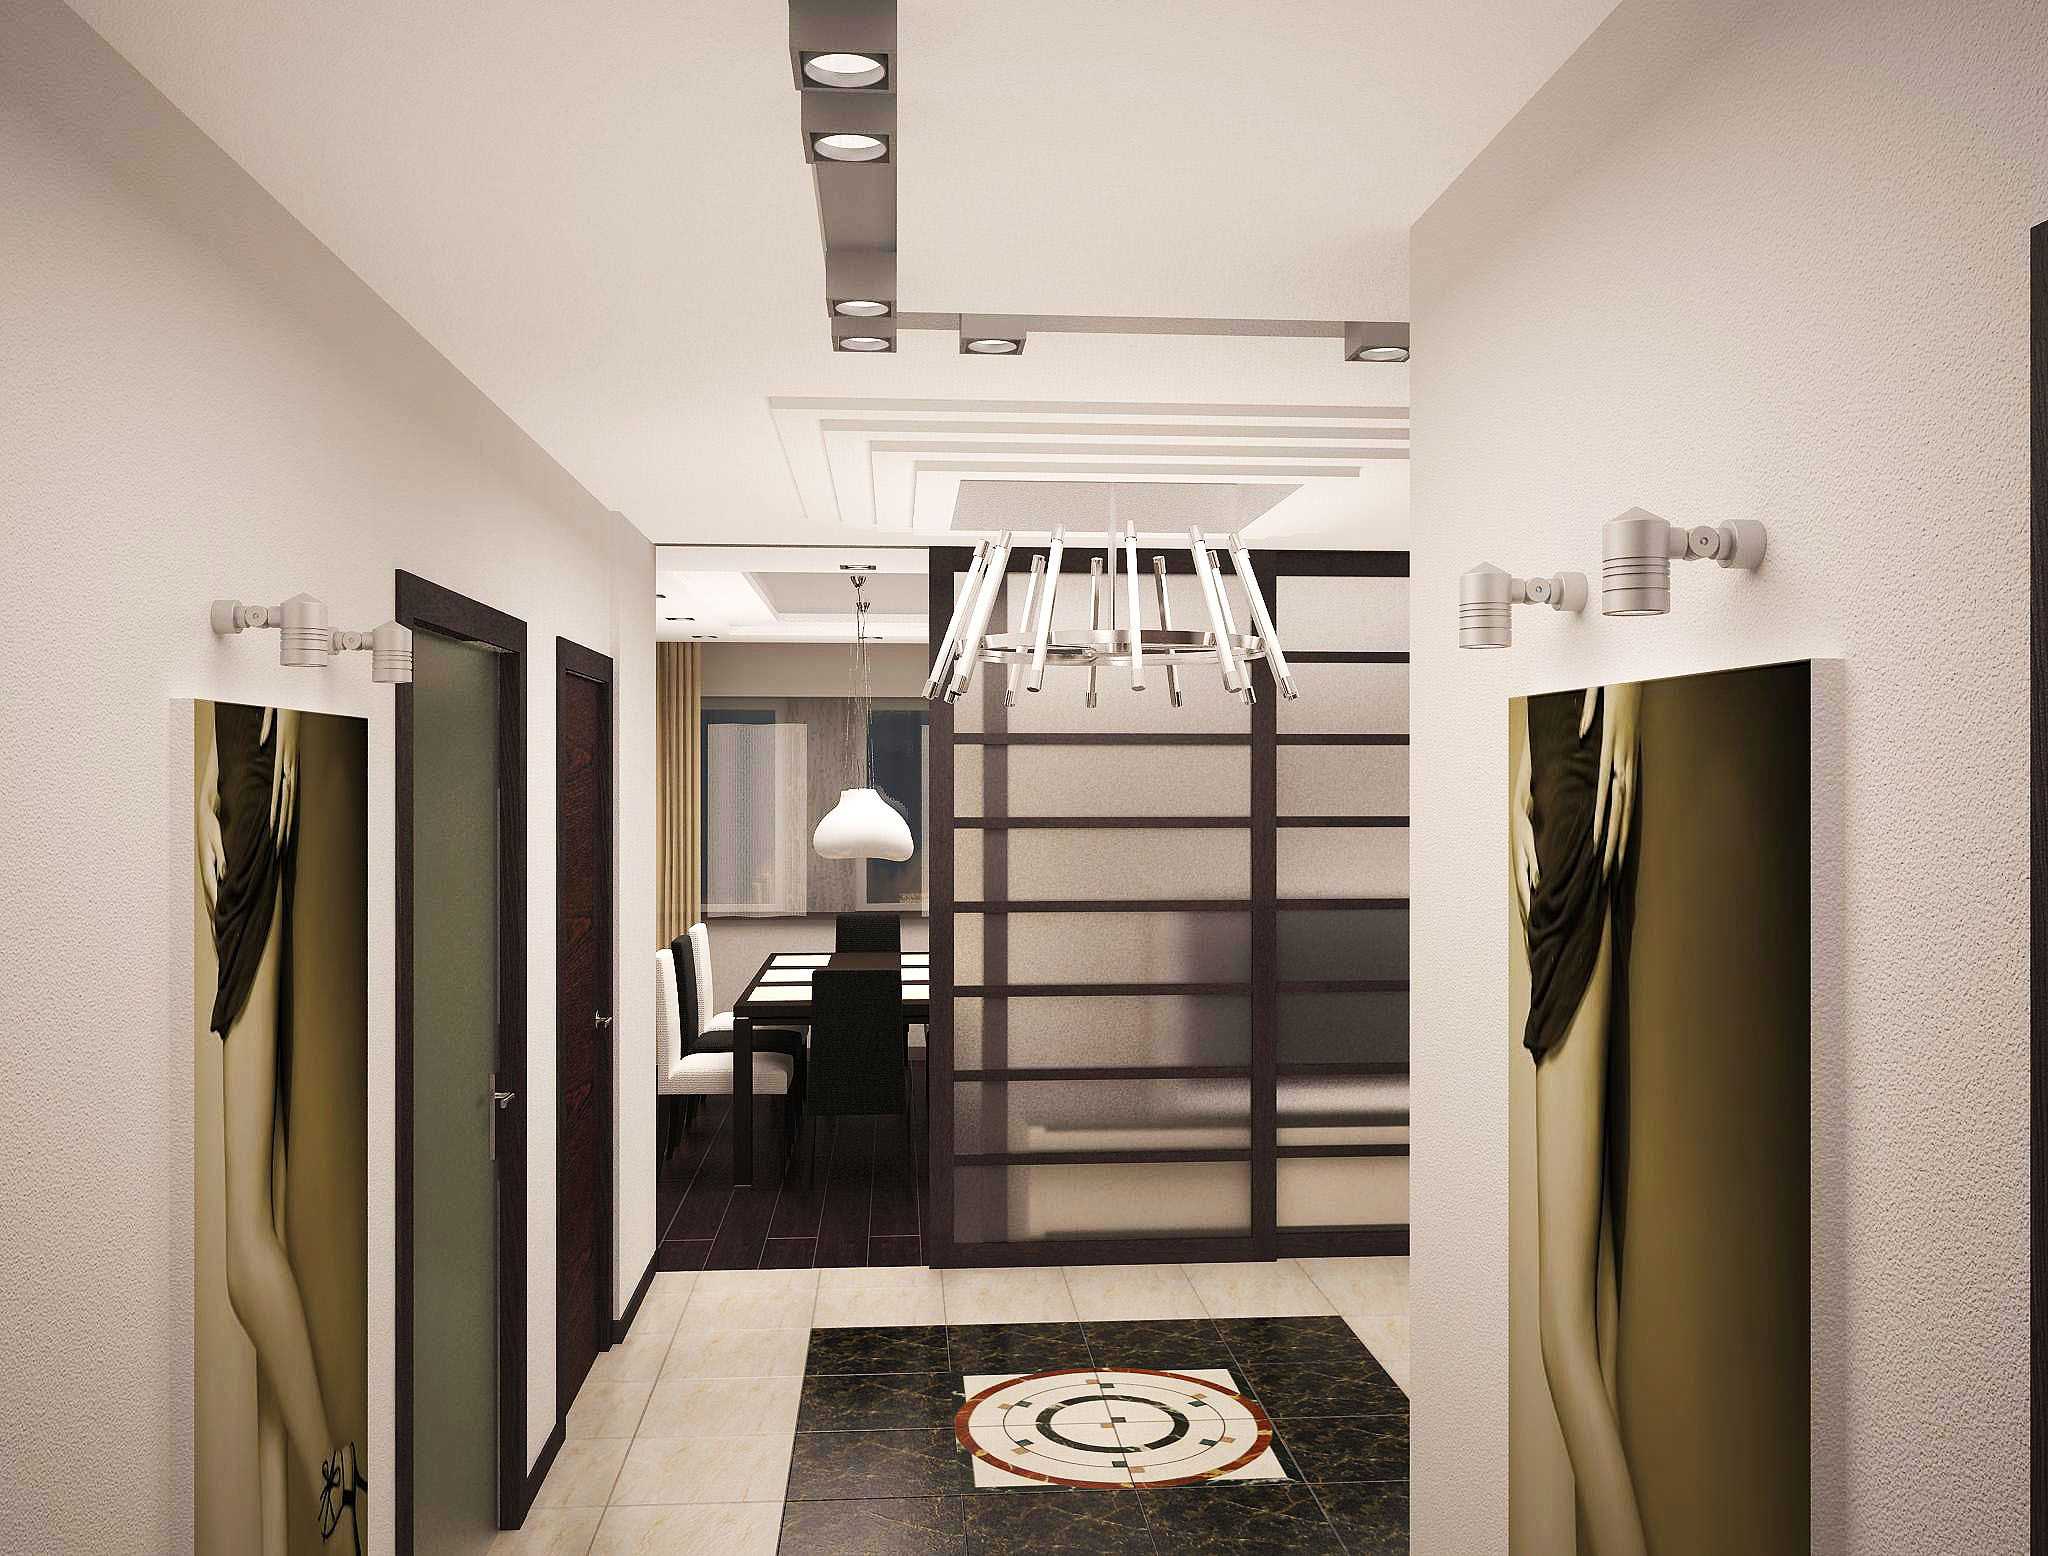 Фотографии примеров угловых прихожих для маленького коридора интерьер и дизайн